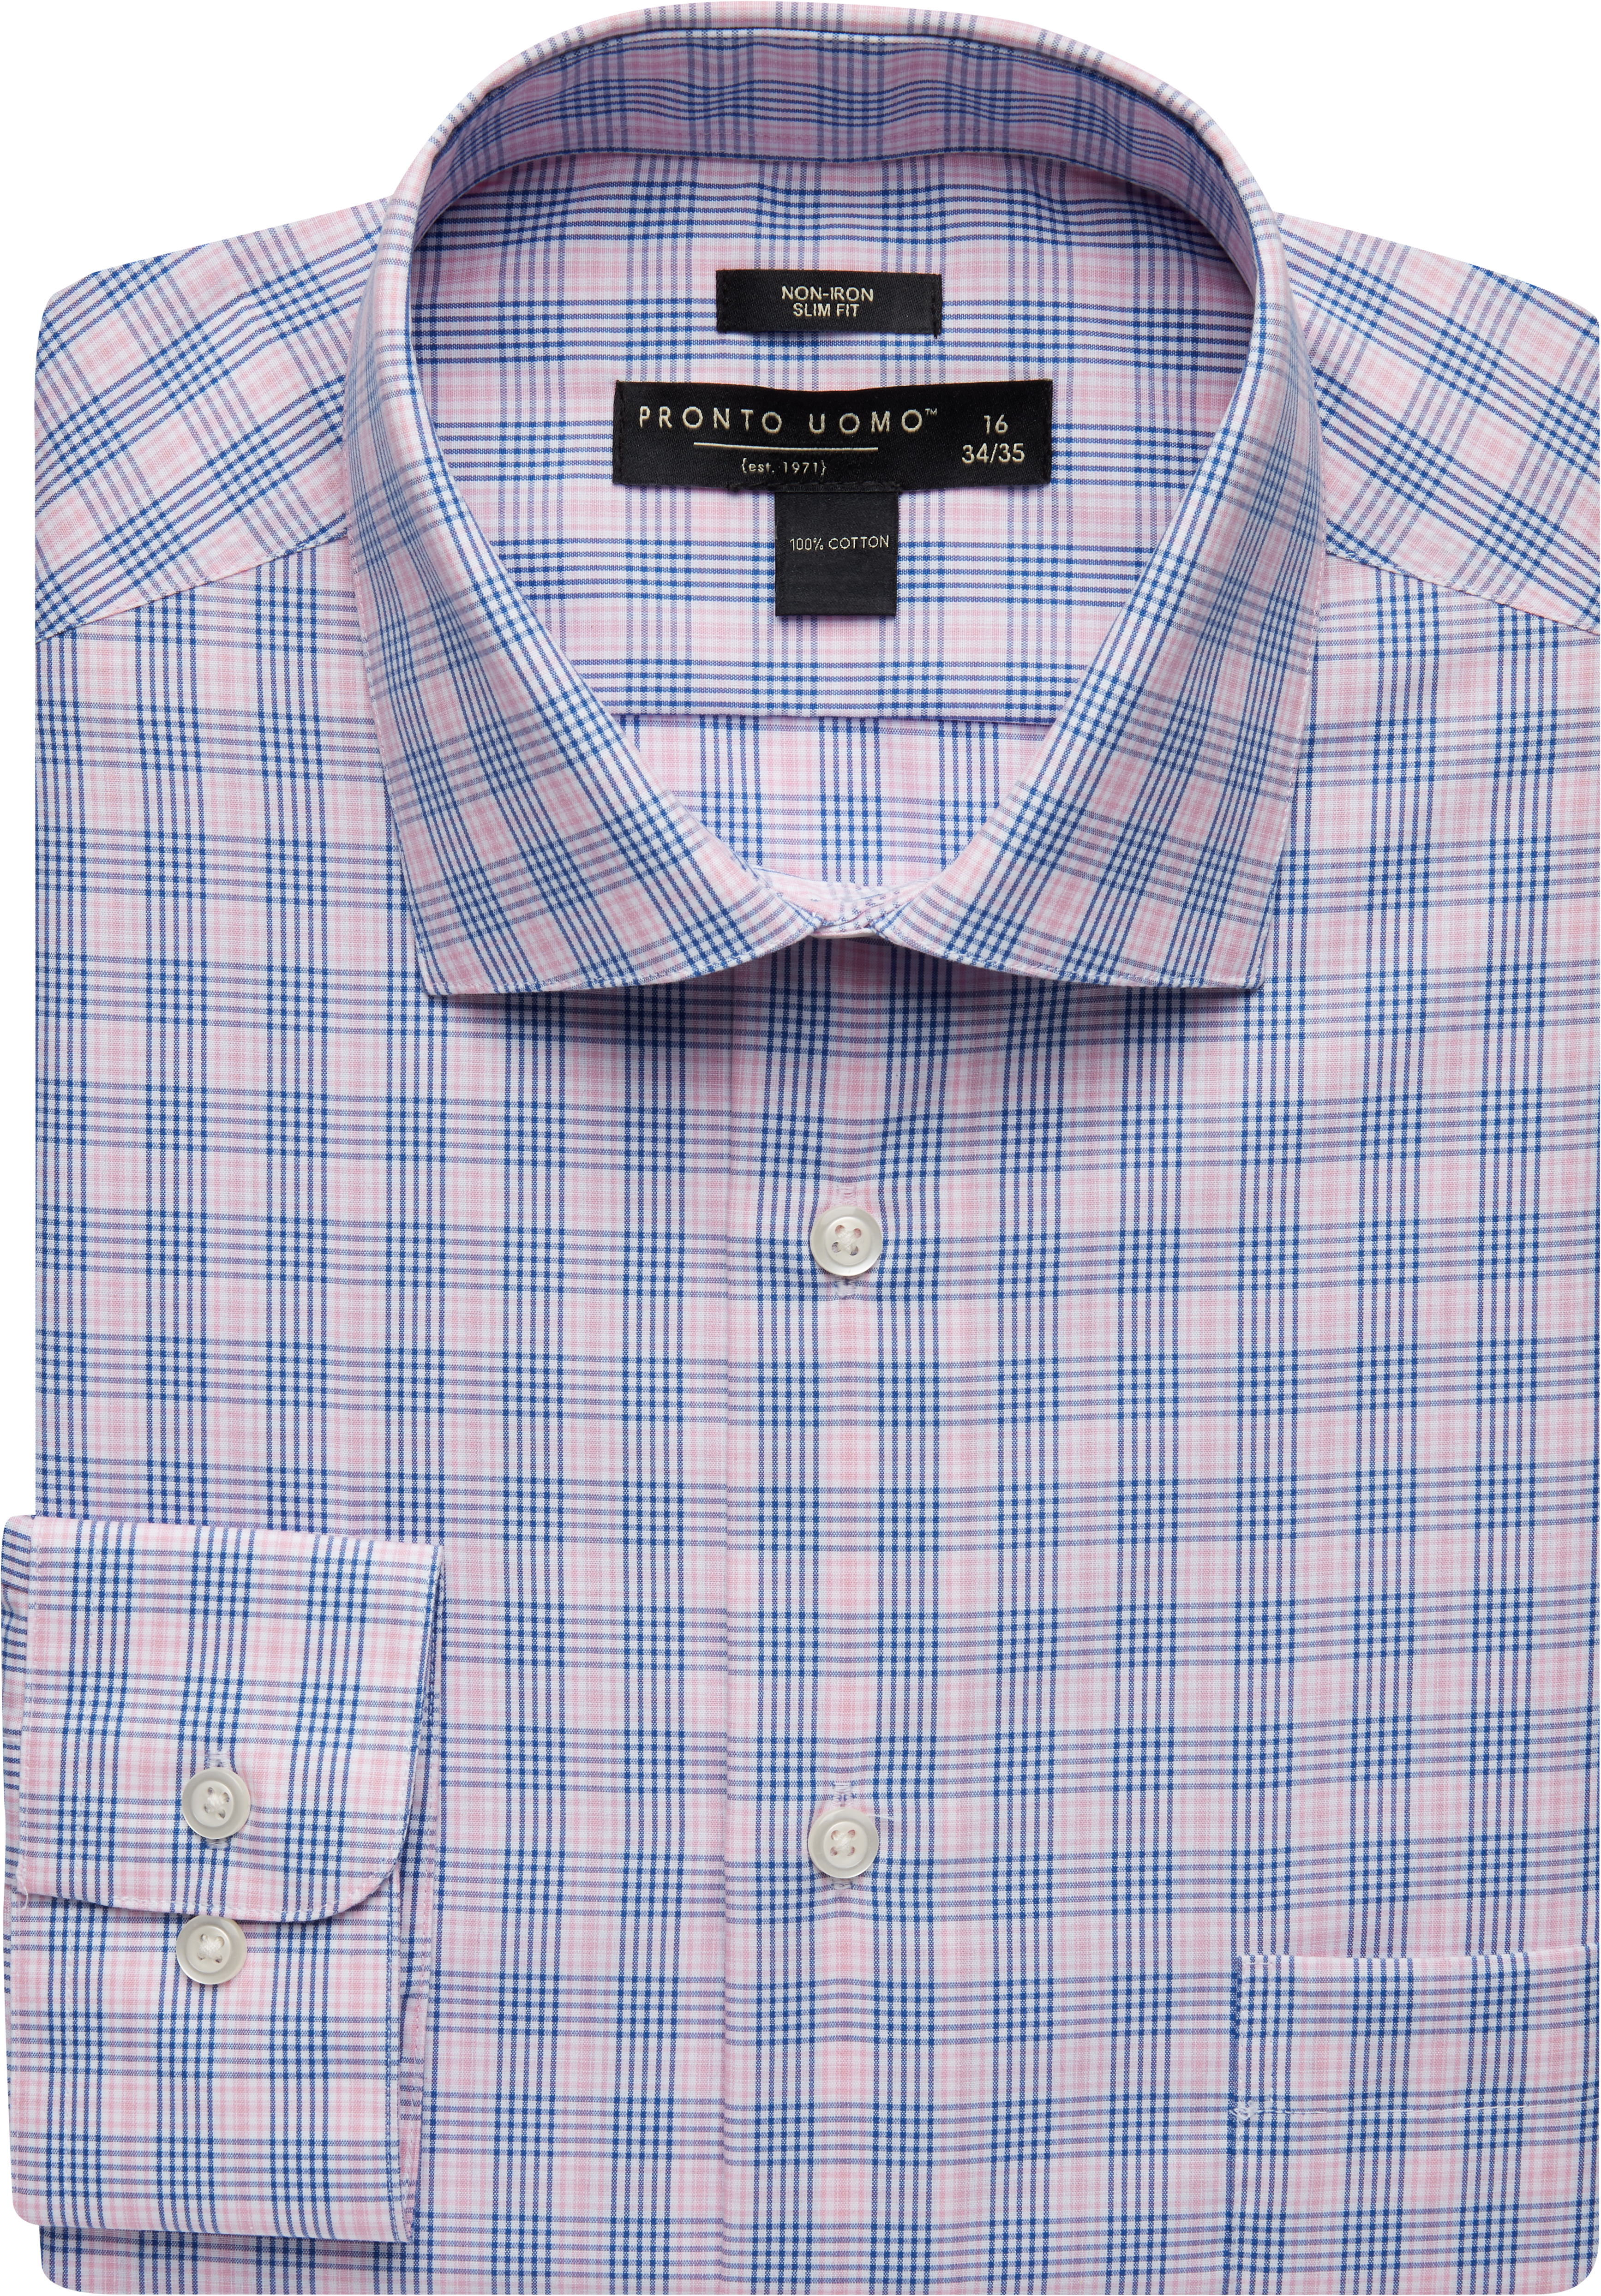 Pronto Uomo Pink & Blue Plaid Slim Fit Dress Shirt - Men's Sale | Men's ...